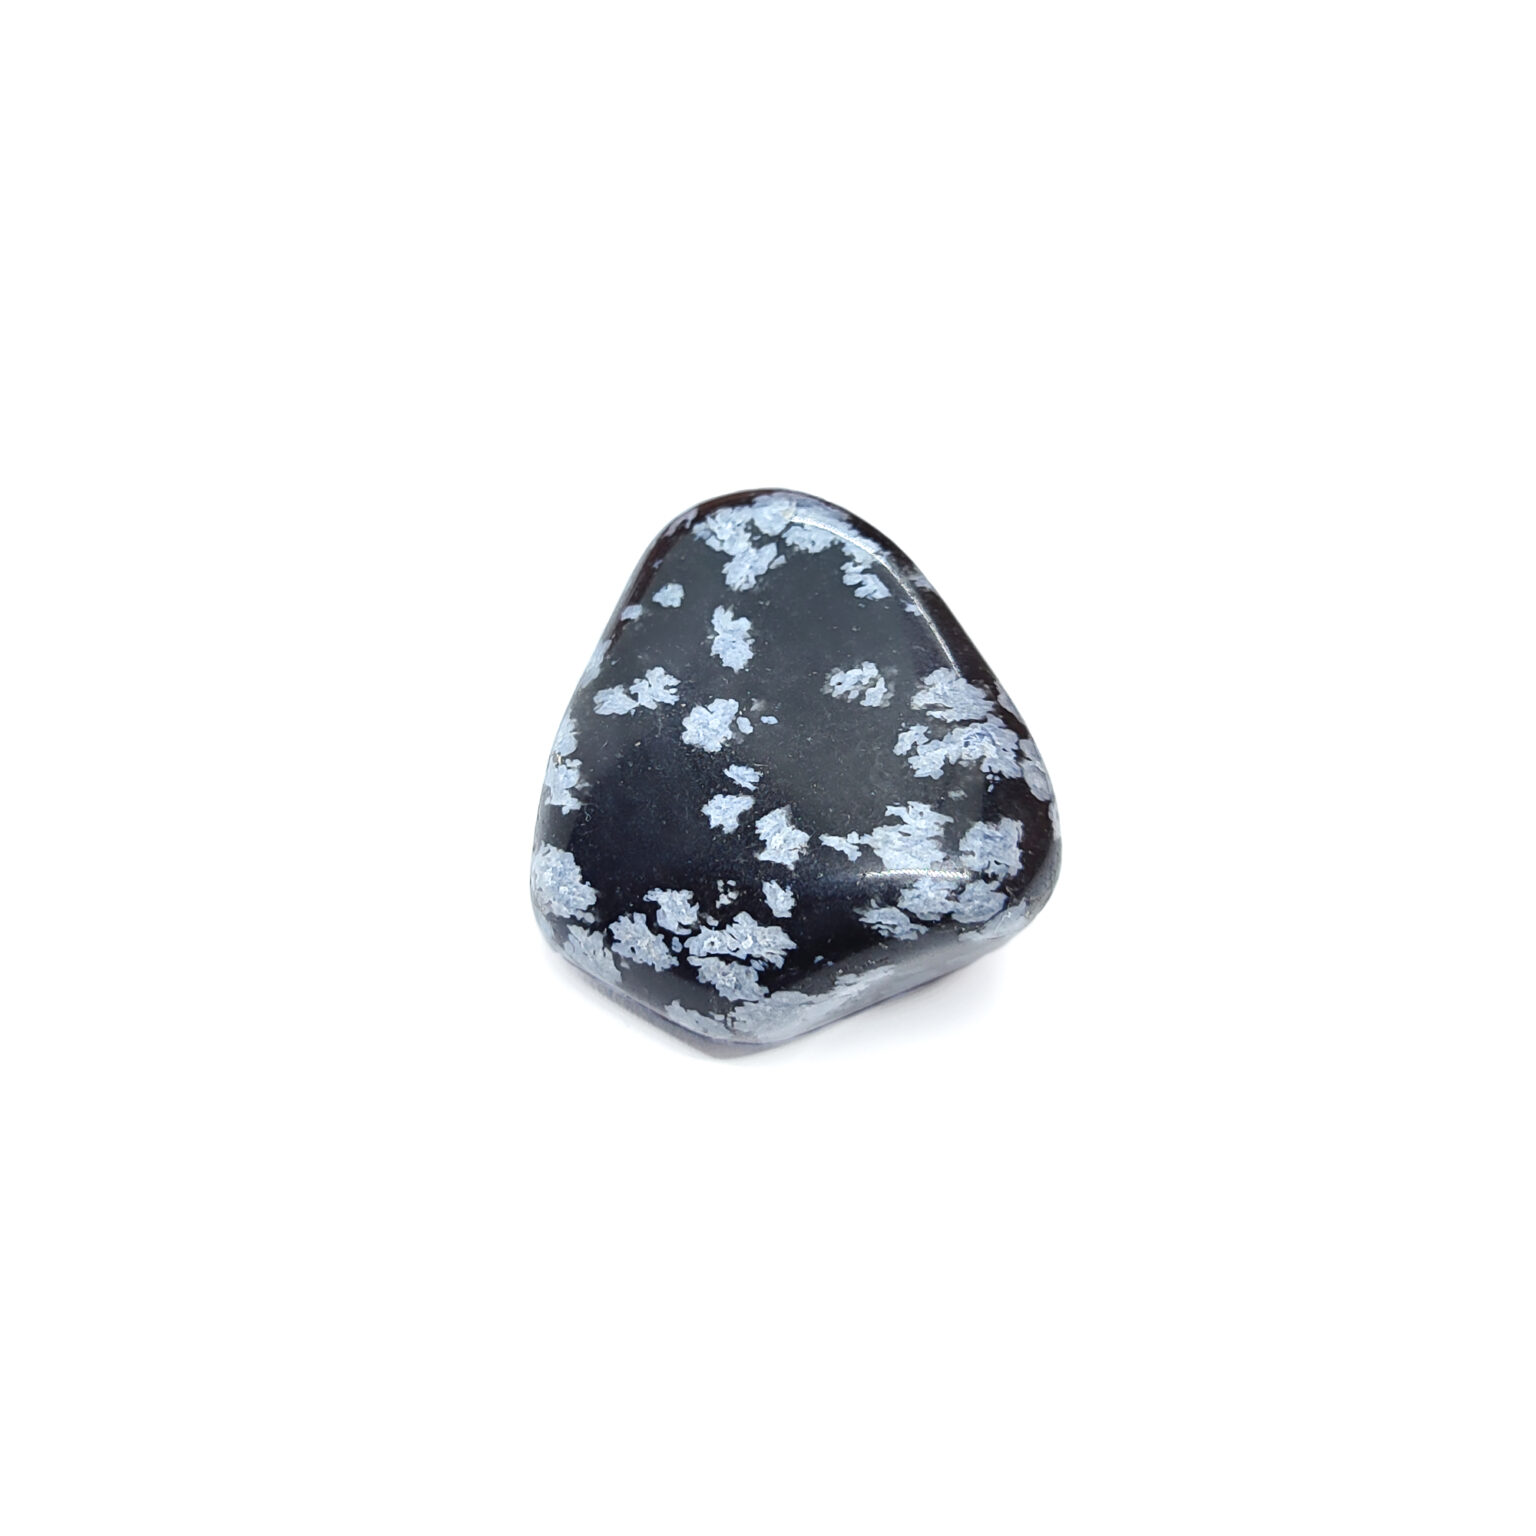 Schwarzer Obsidian Trommelstein mit weißen Flecken. Bekannt als Schneeflocken-Obsidian.